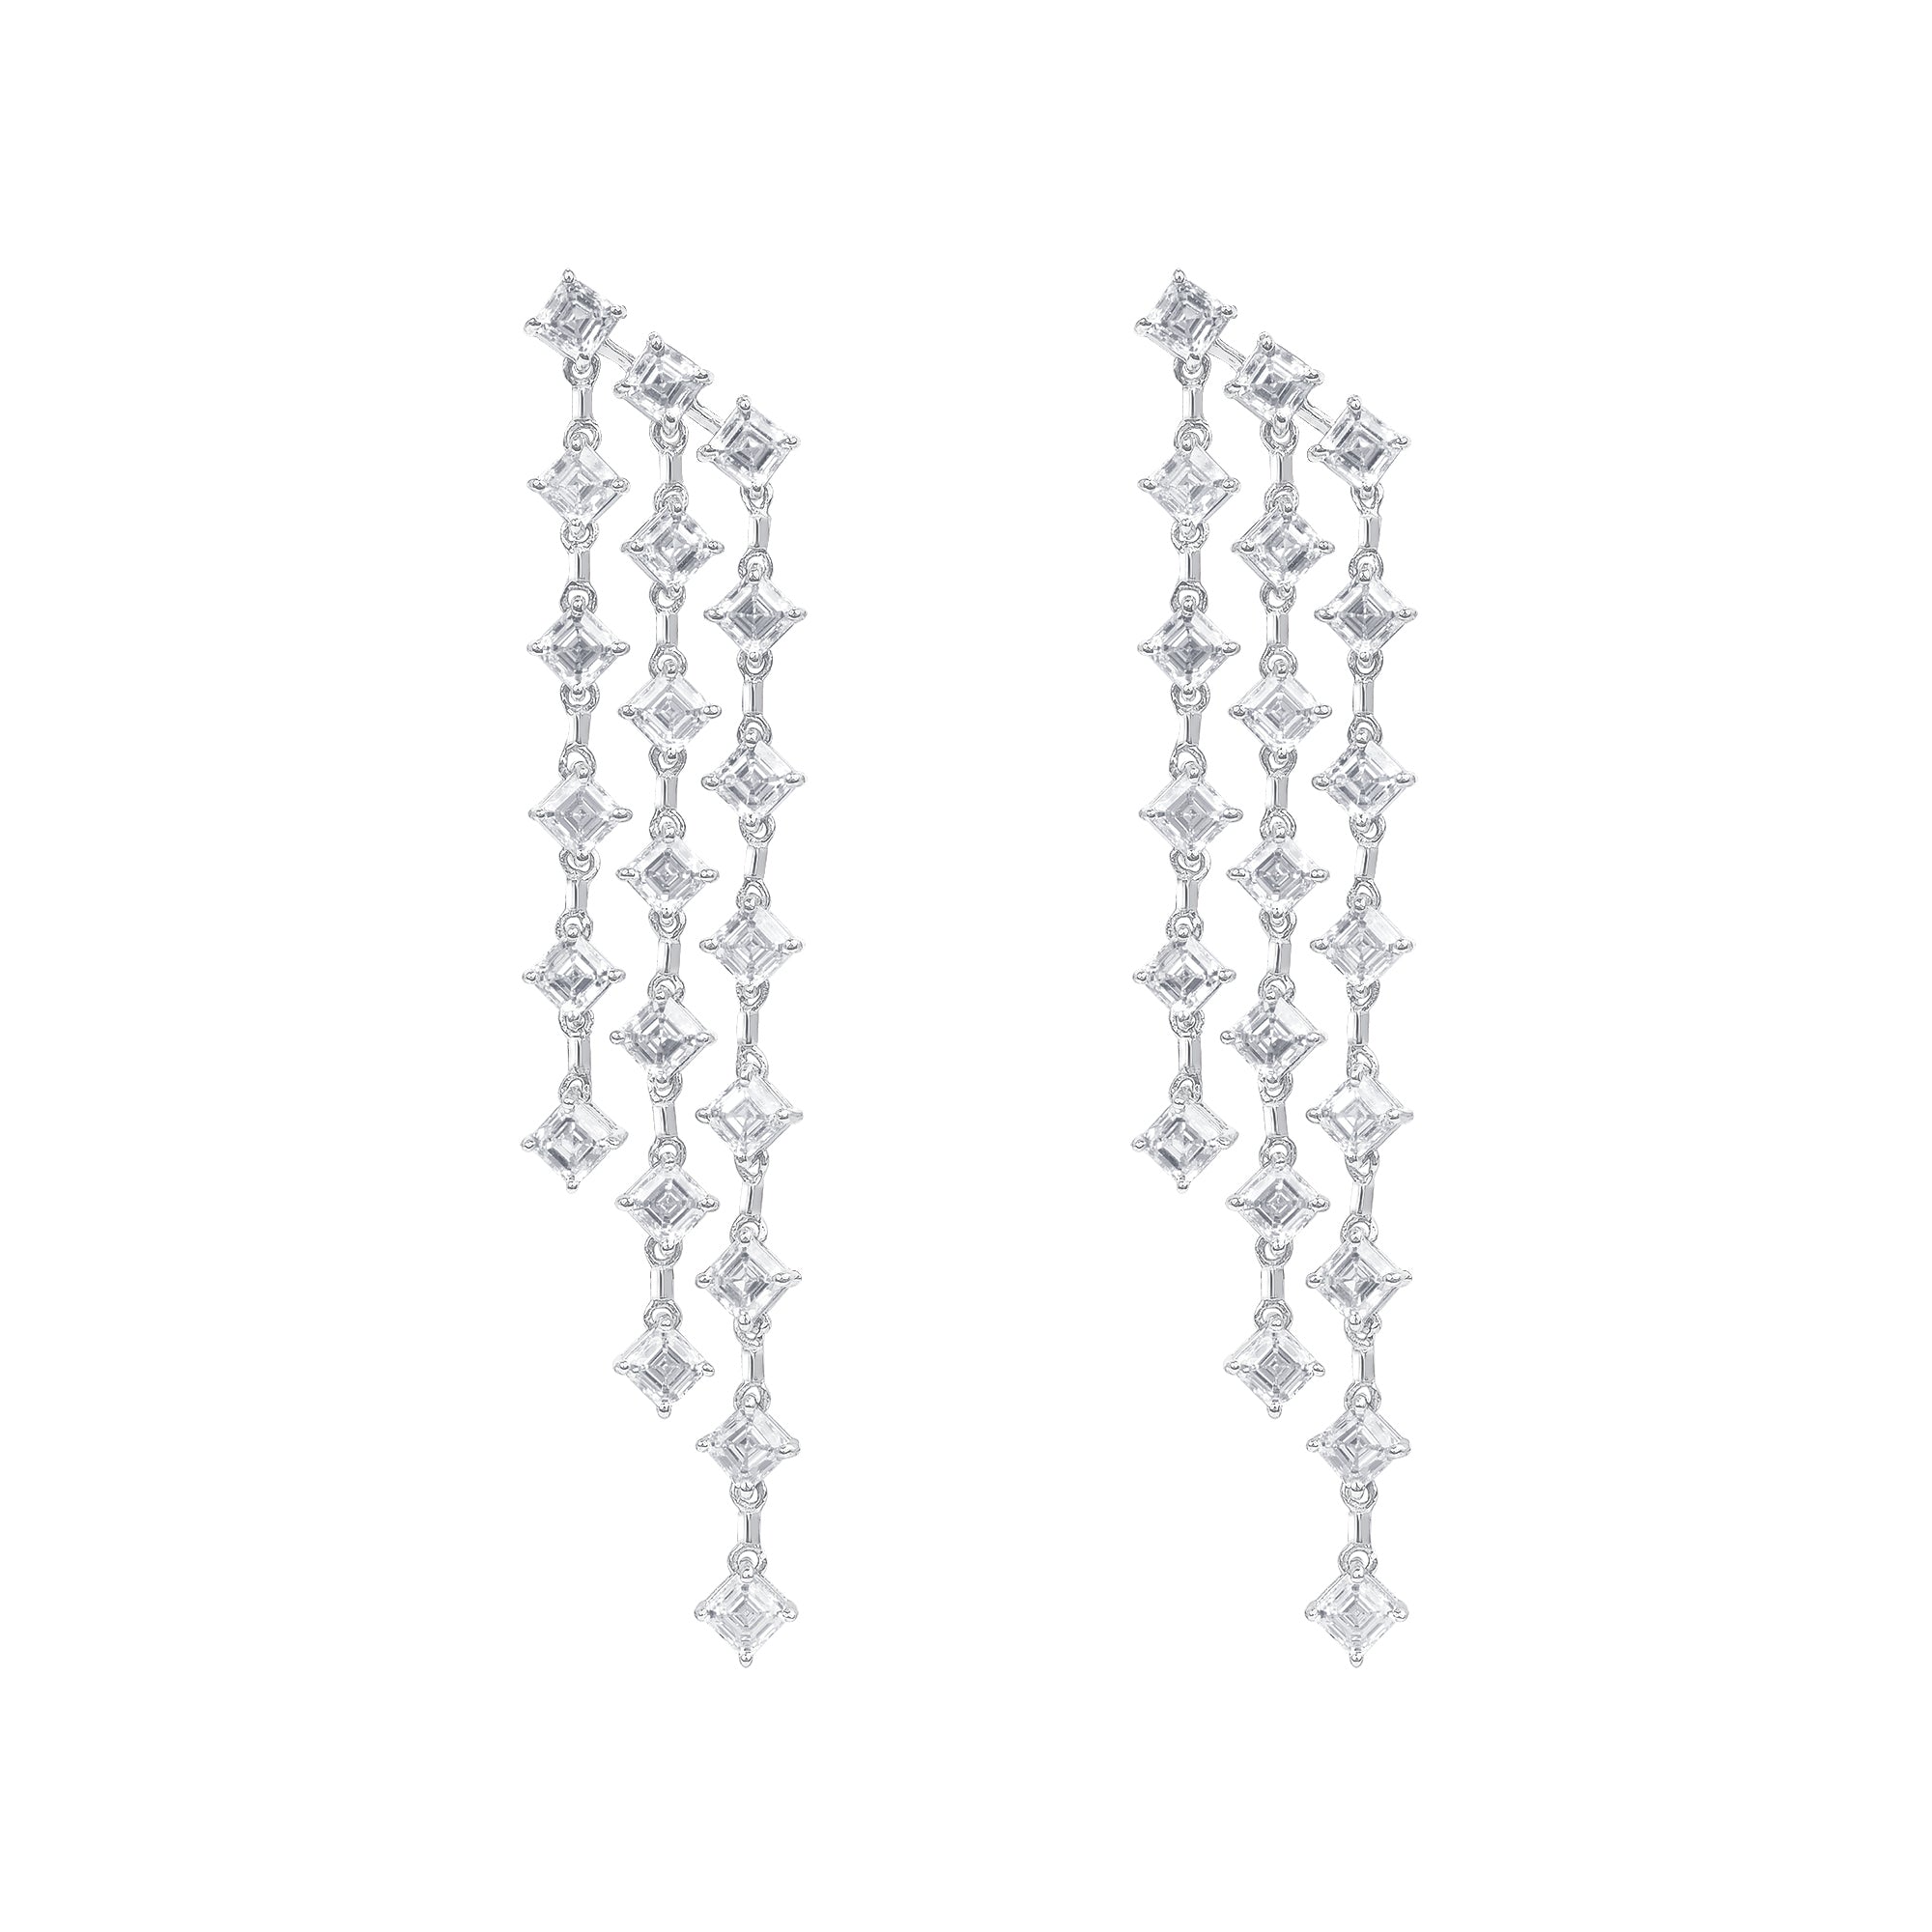 Asscher Cut Diamond 3 Tier Shoulder Duster Earrings in 18K White Gold